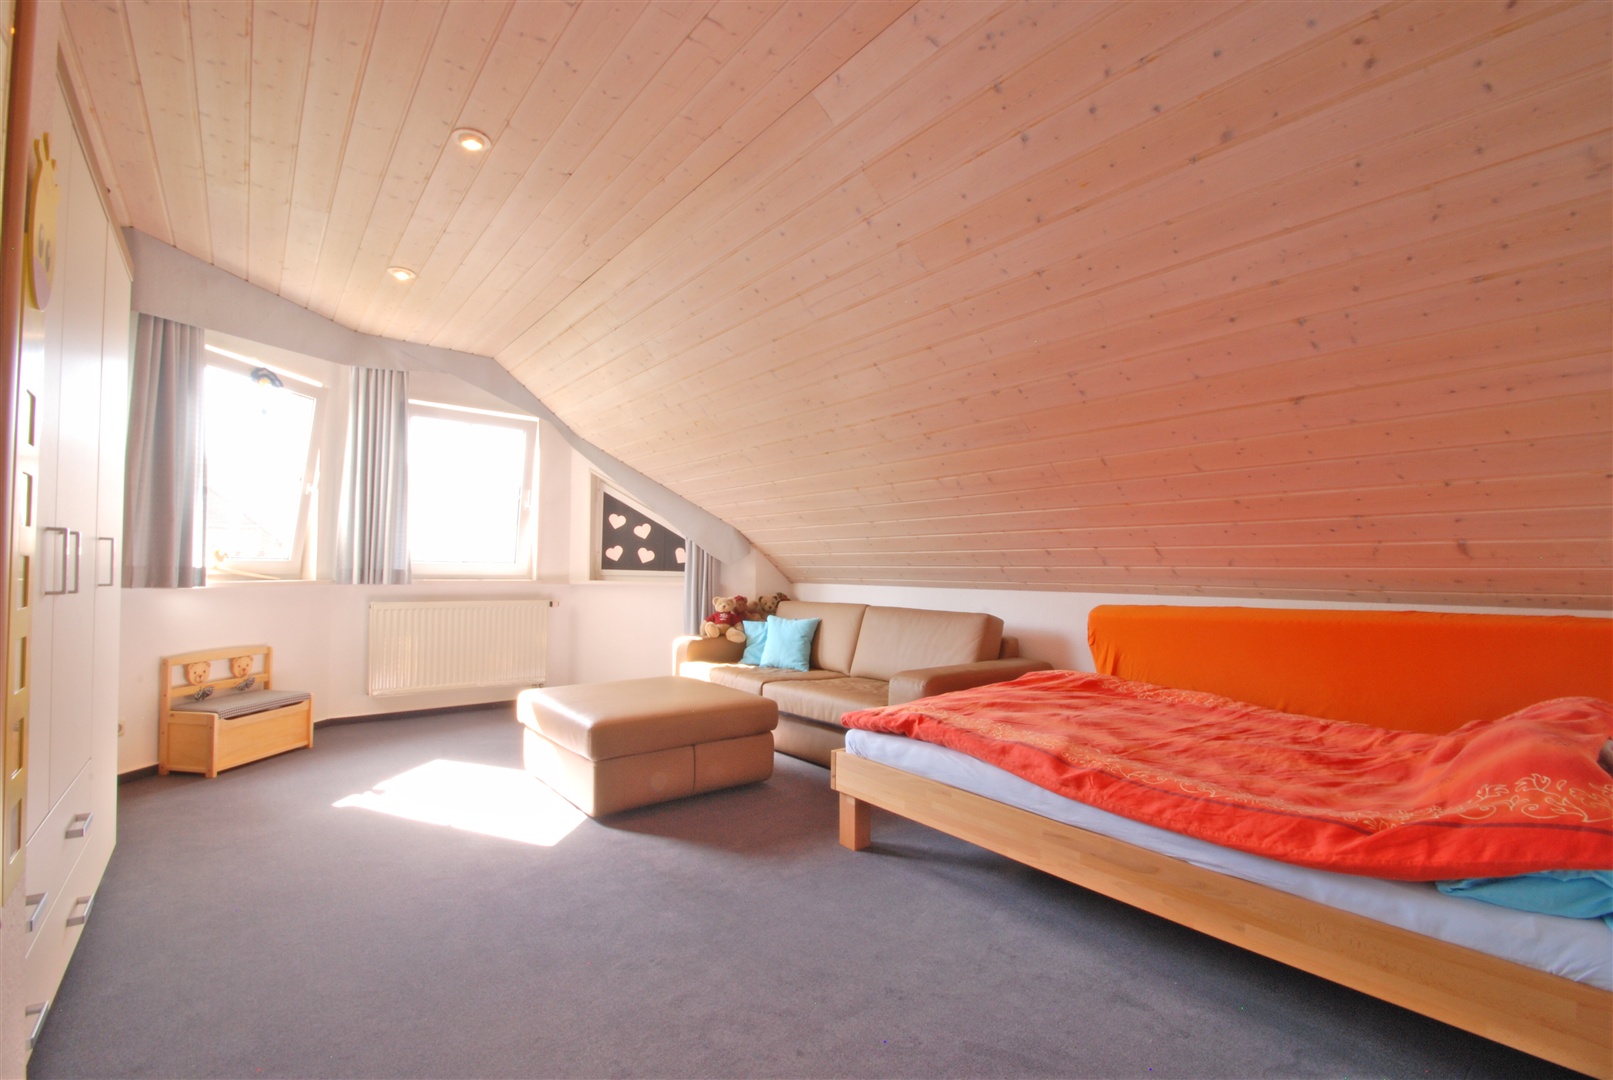 einfamilienhaus in weiterstadt: kinderschlafzimmer mit sonnenerker - Oliver Reifferscheid - Immobilienmakler Darmstadt